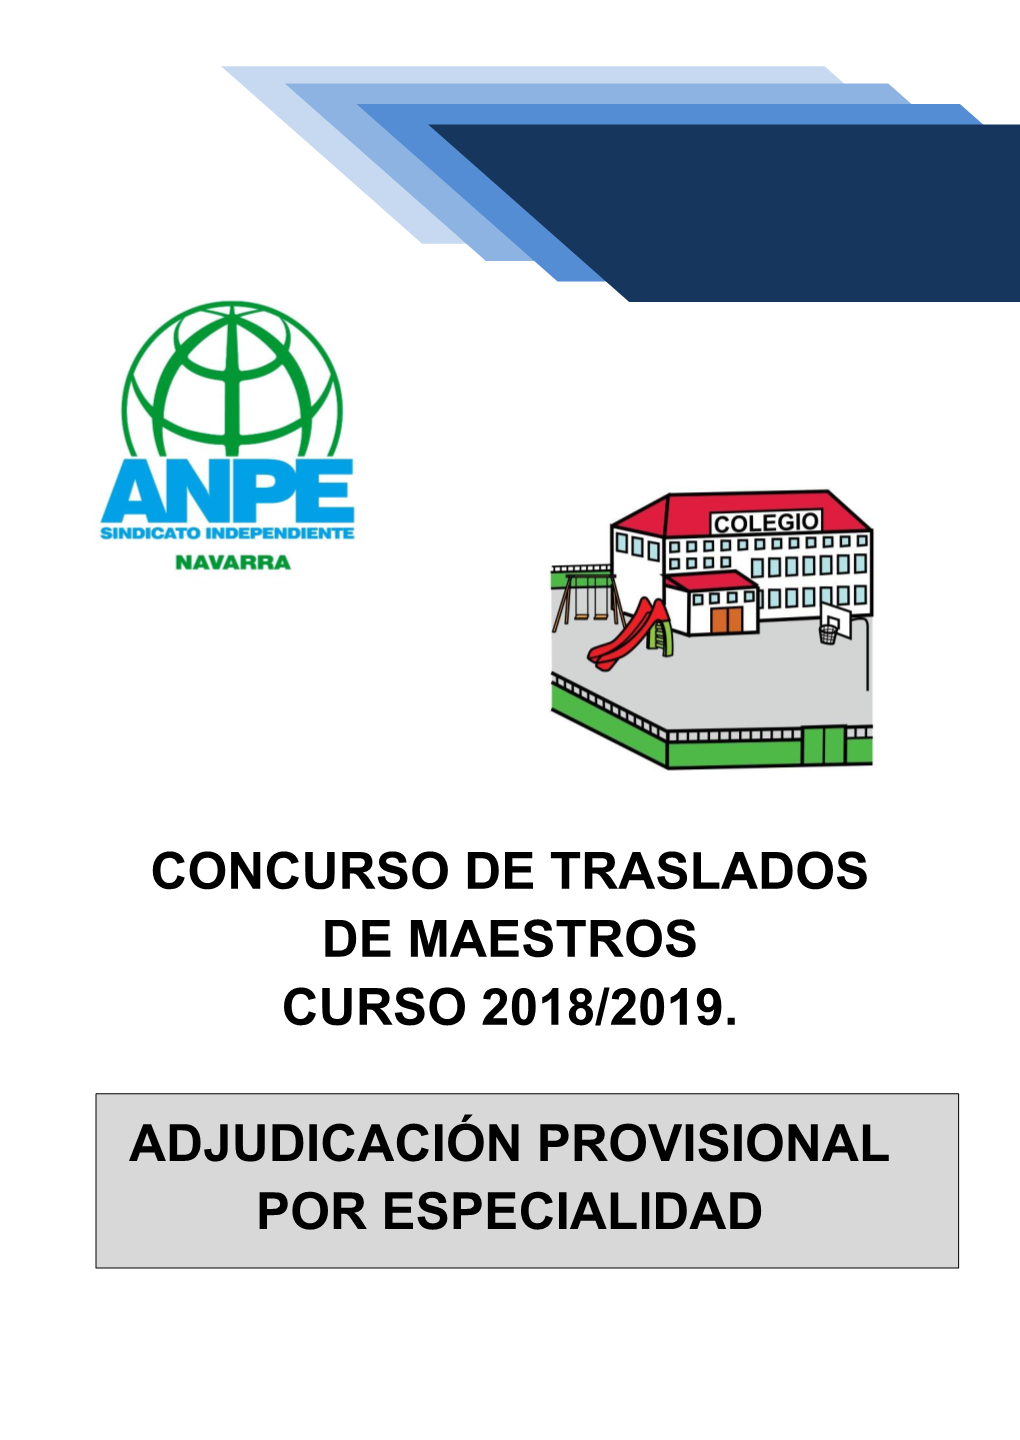 Concurso De Traslados De Maestros Curso 2018/2019. Adjudicación Provisional Por Especialidad